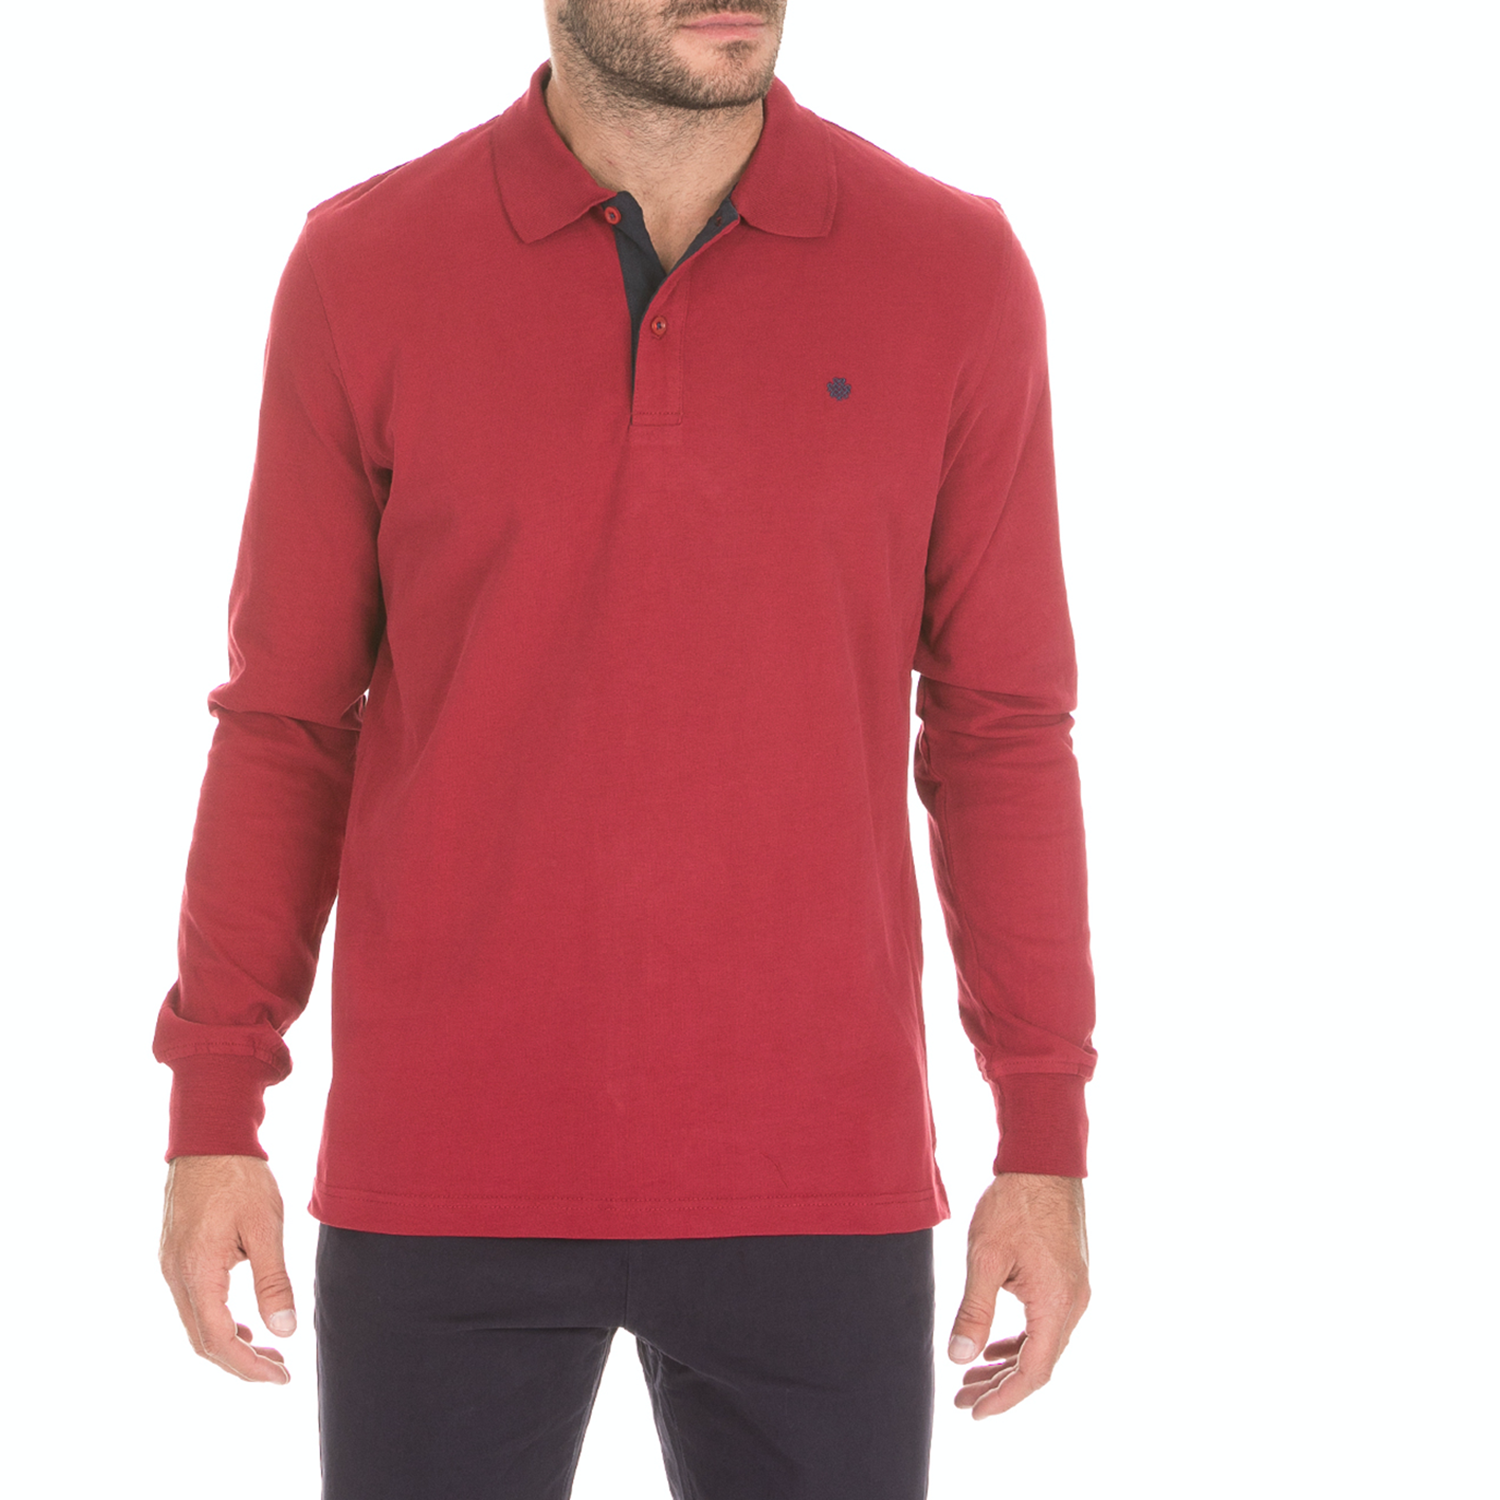 Ανδρικά/Ρούχα/Μπλούζες/Πόλο DORS - Ανδρική πόλο μπλούζα DORS κόκκινη